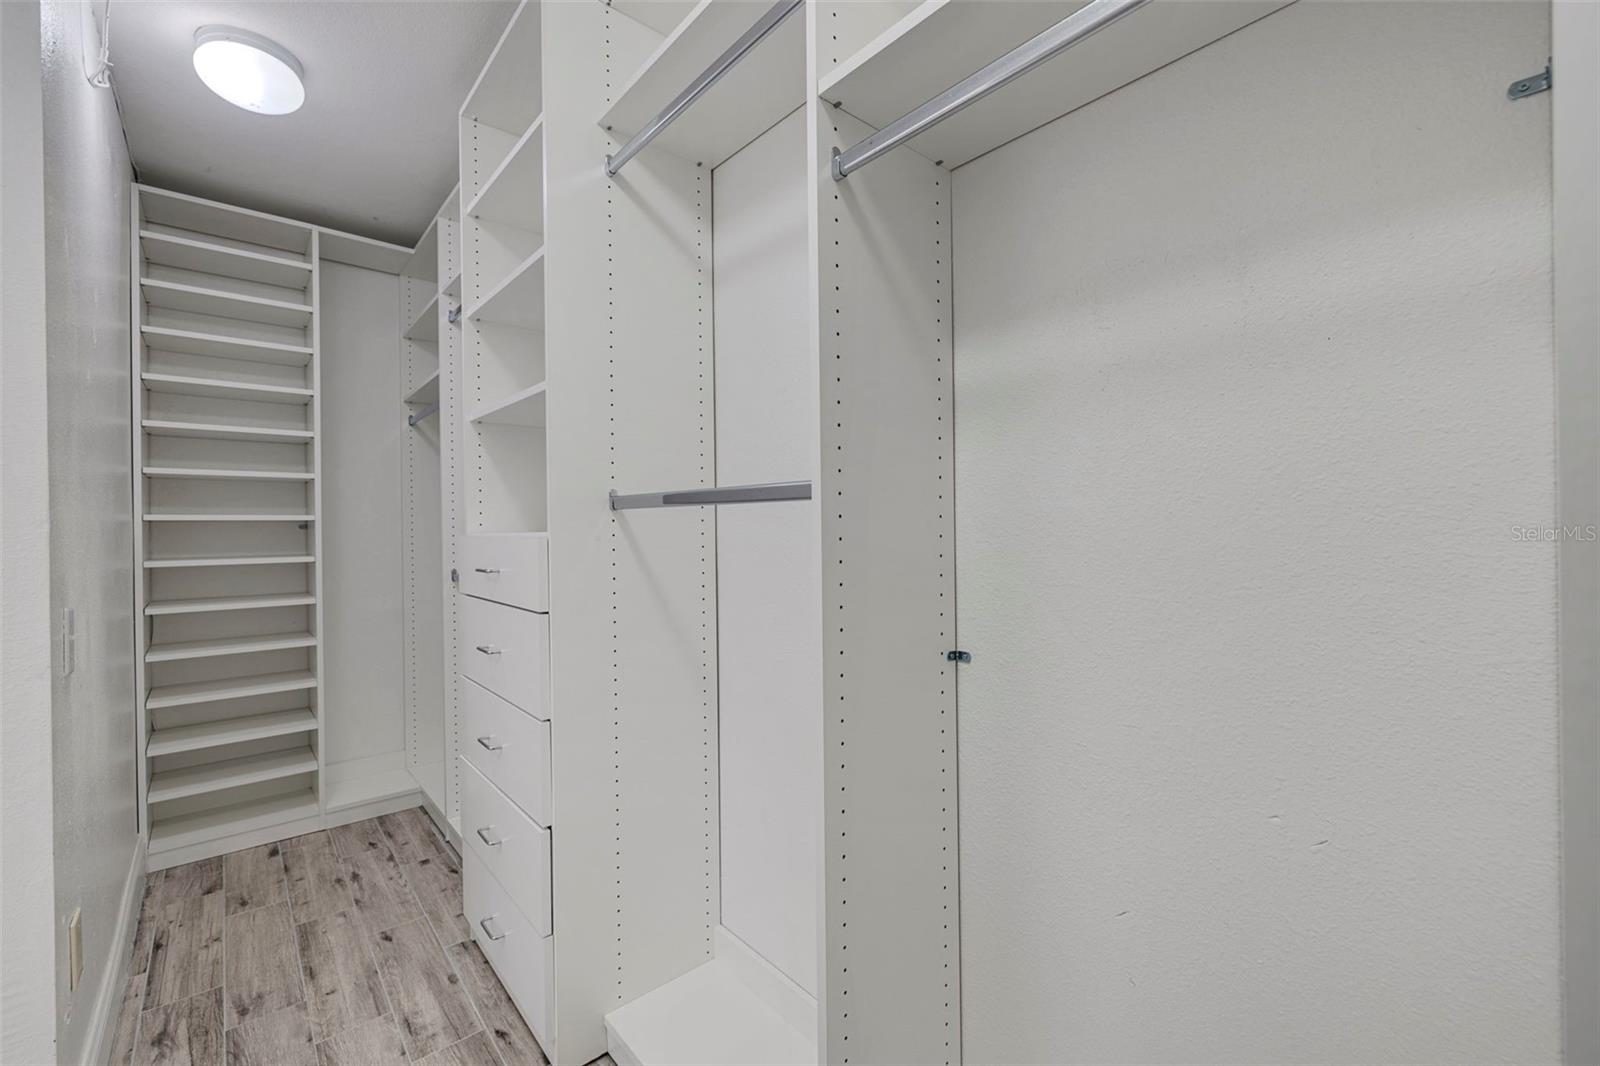 Primary Suite's Built-In Walk-in Closet